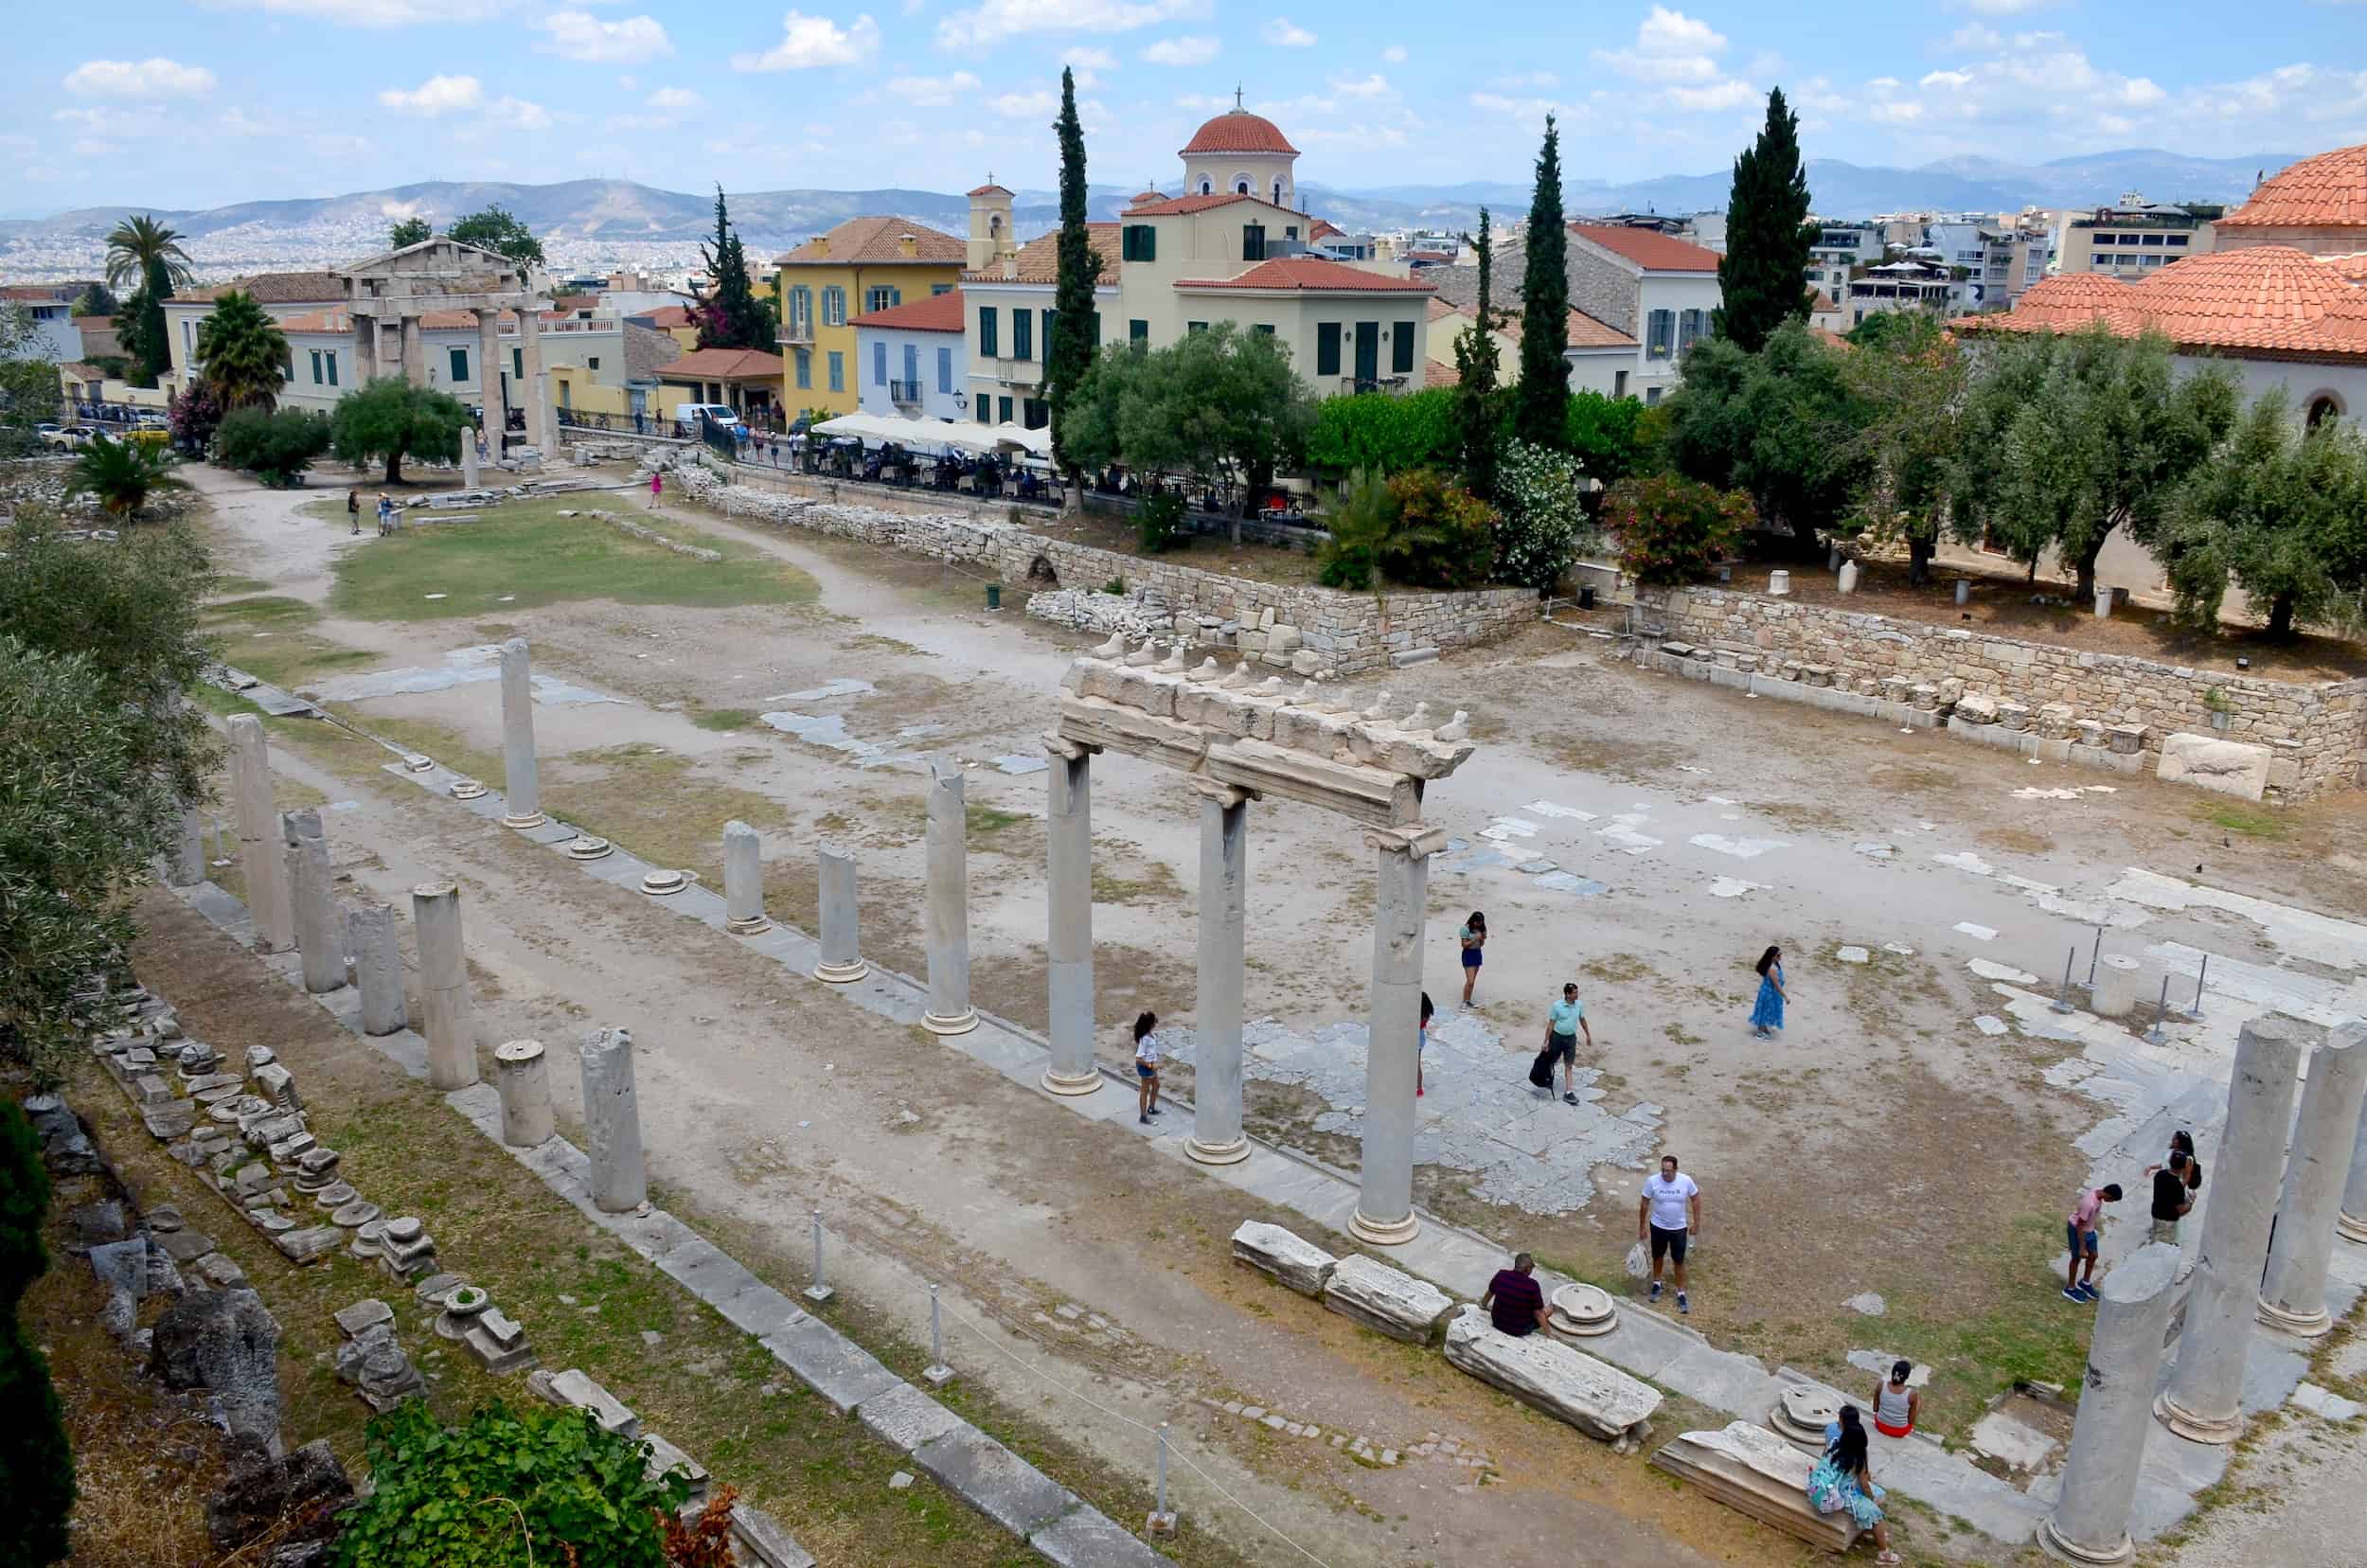 Roman Agora in Athens, Greece